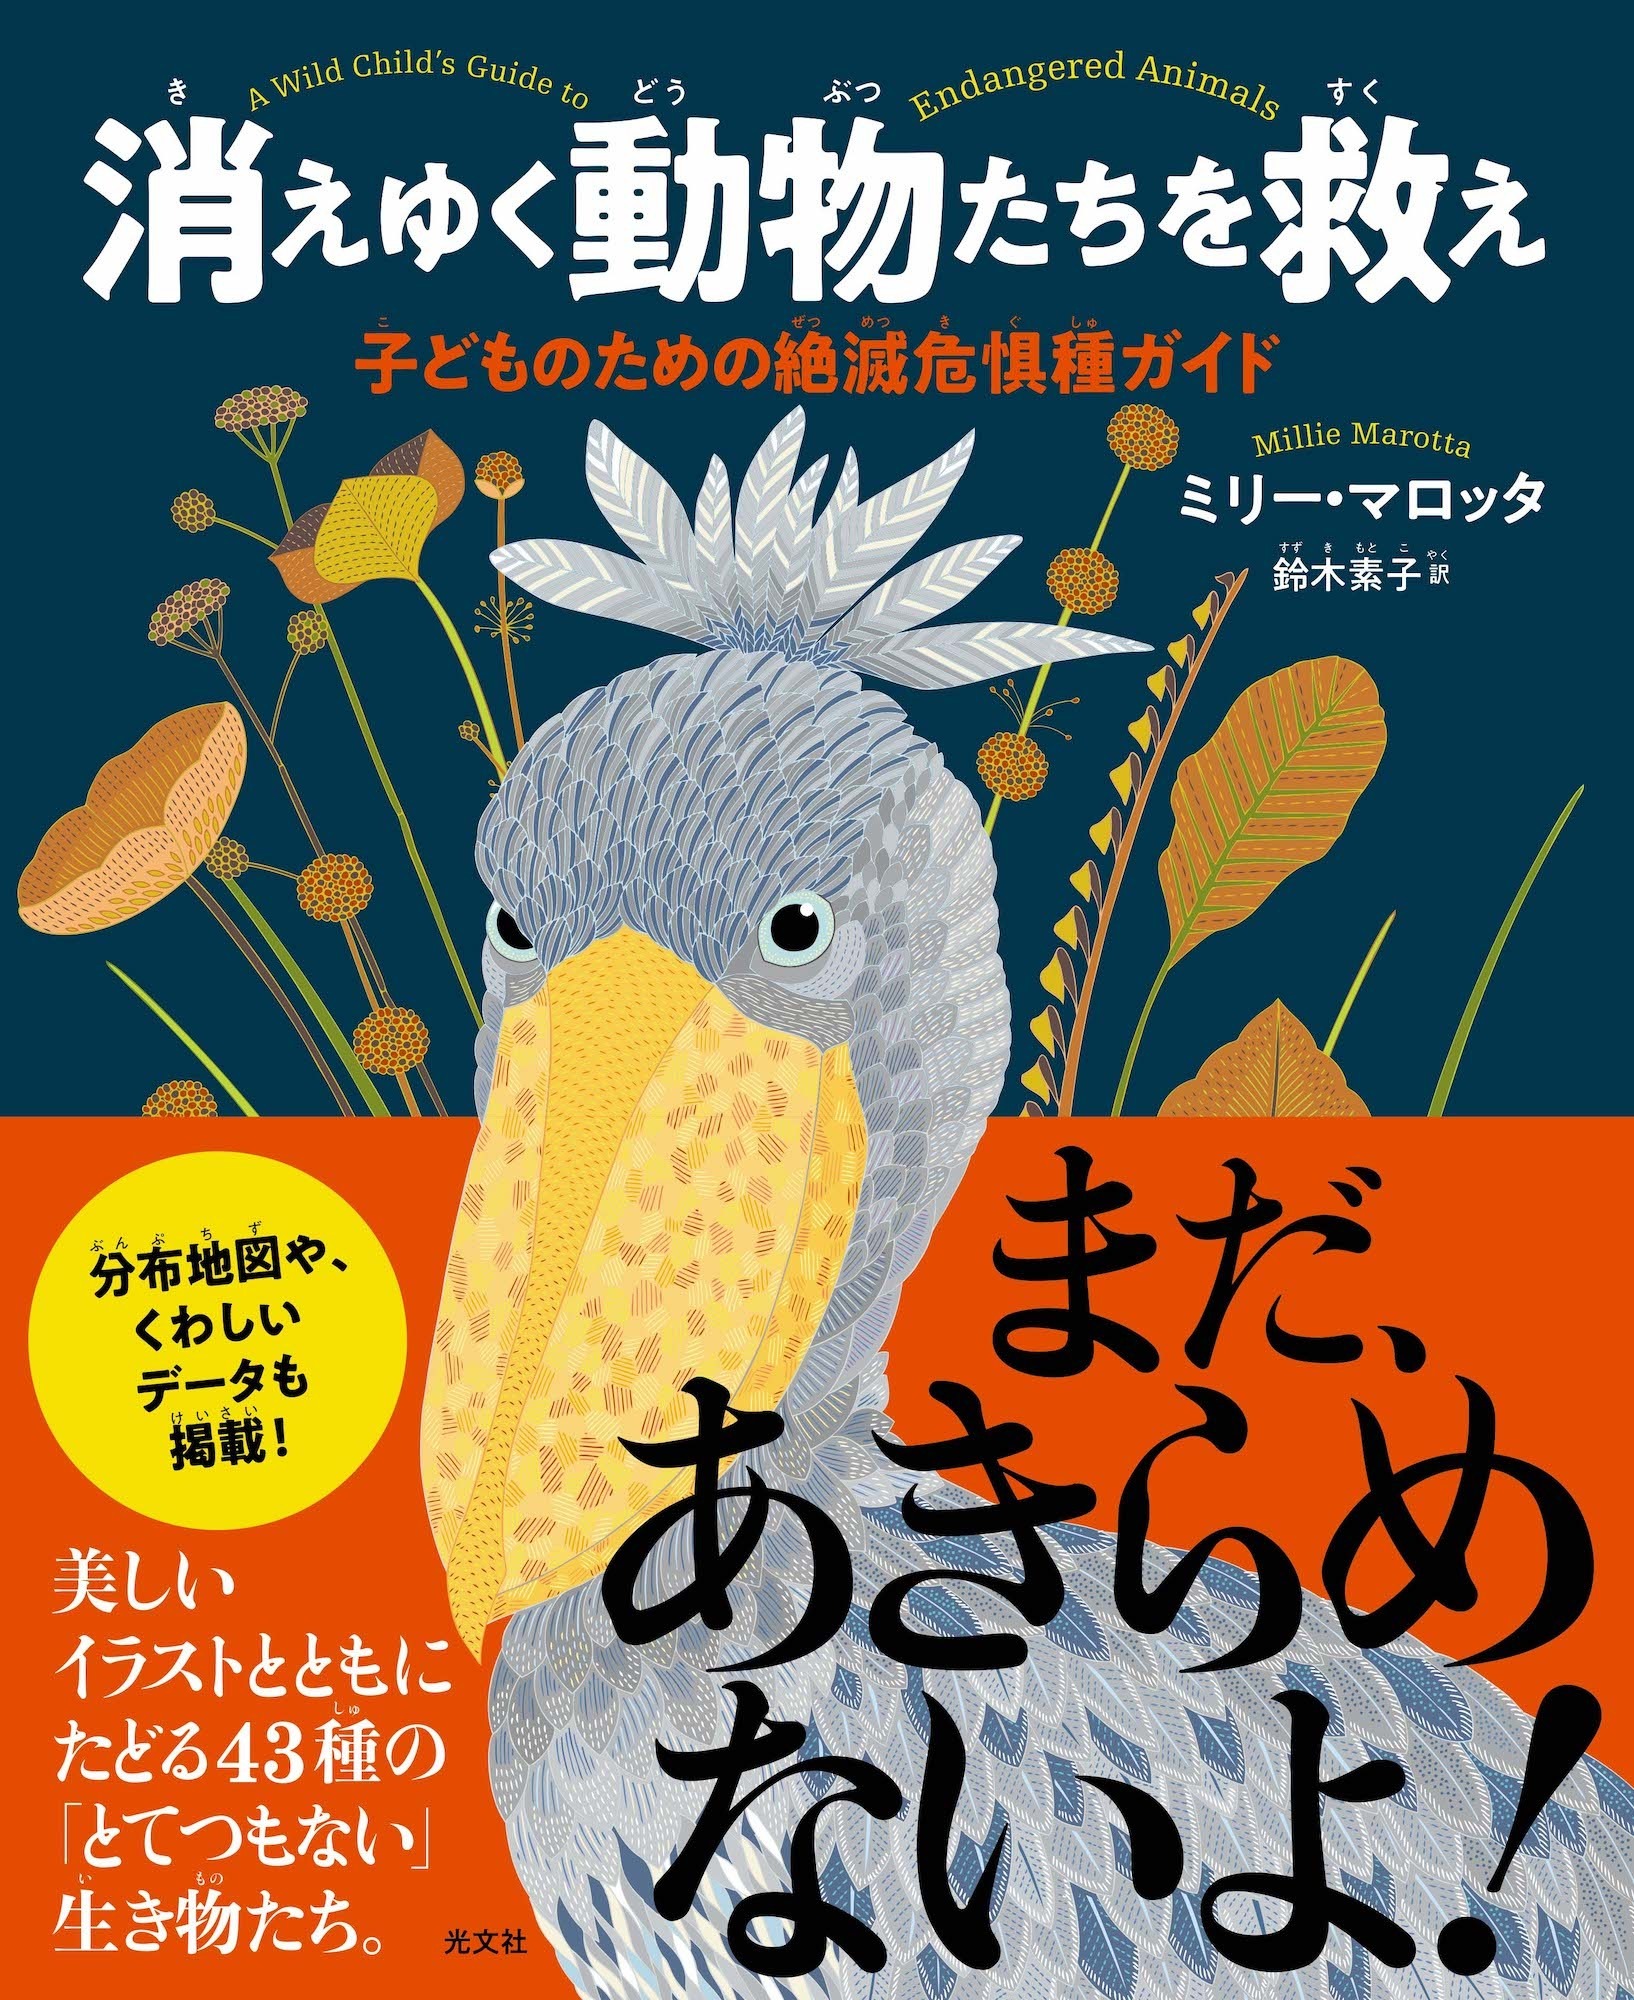 図鑑 消えゆく動物たちを救え 子どものための絶滅危惧種ガイド 刊行 日本版の表紙はハシビロコウ 動物 のリアルを伝えるwebメディア Reanimal